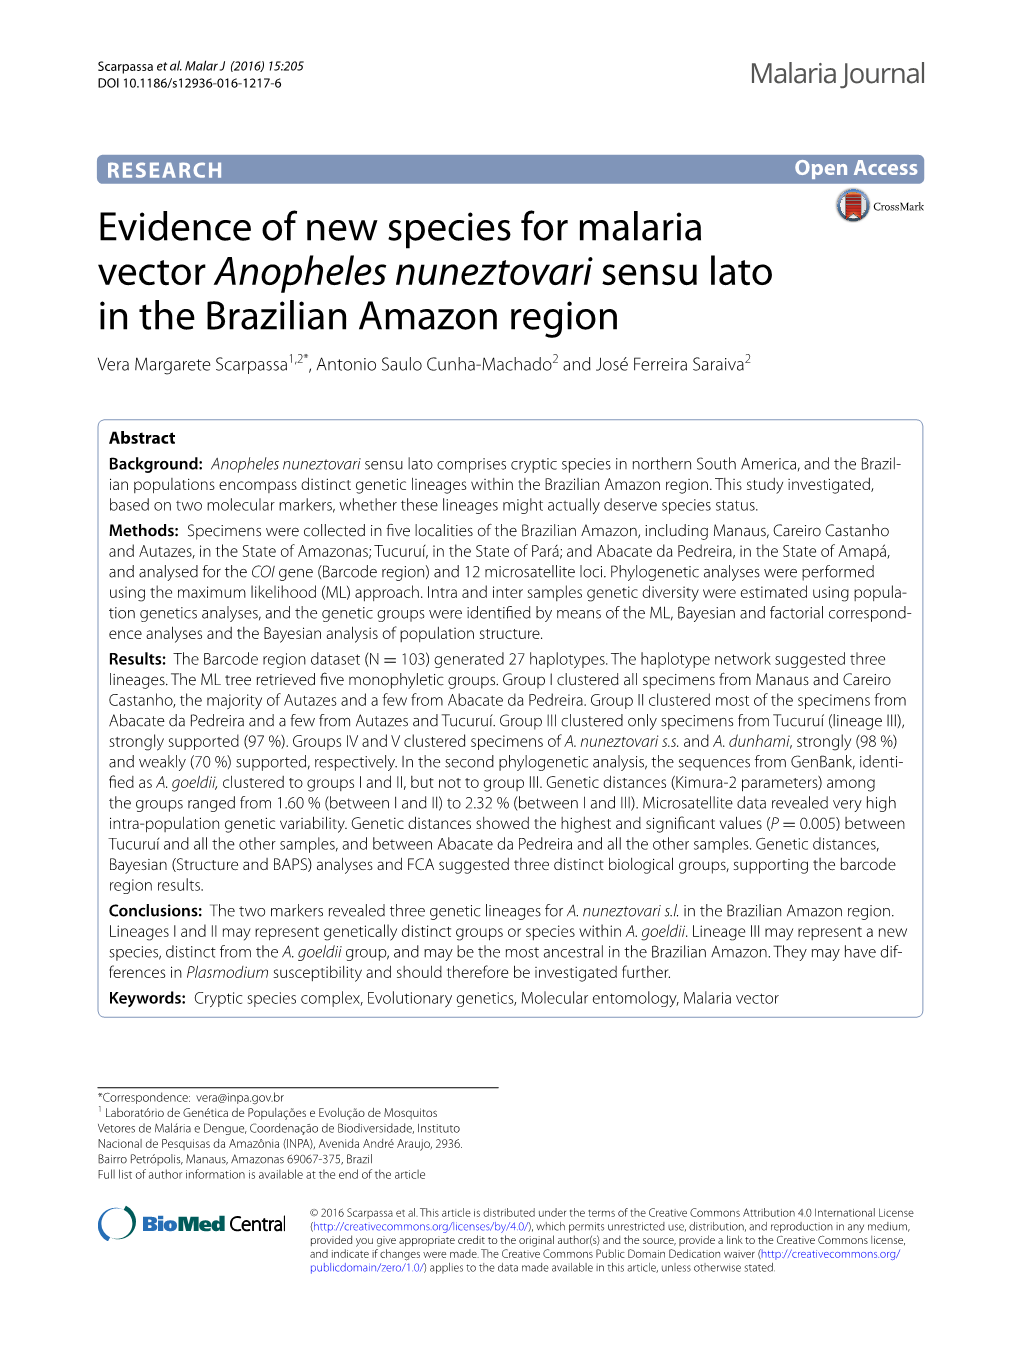 Evidence of New Species for Malaria Vector Anopheles Nuneztovari